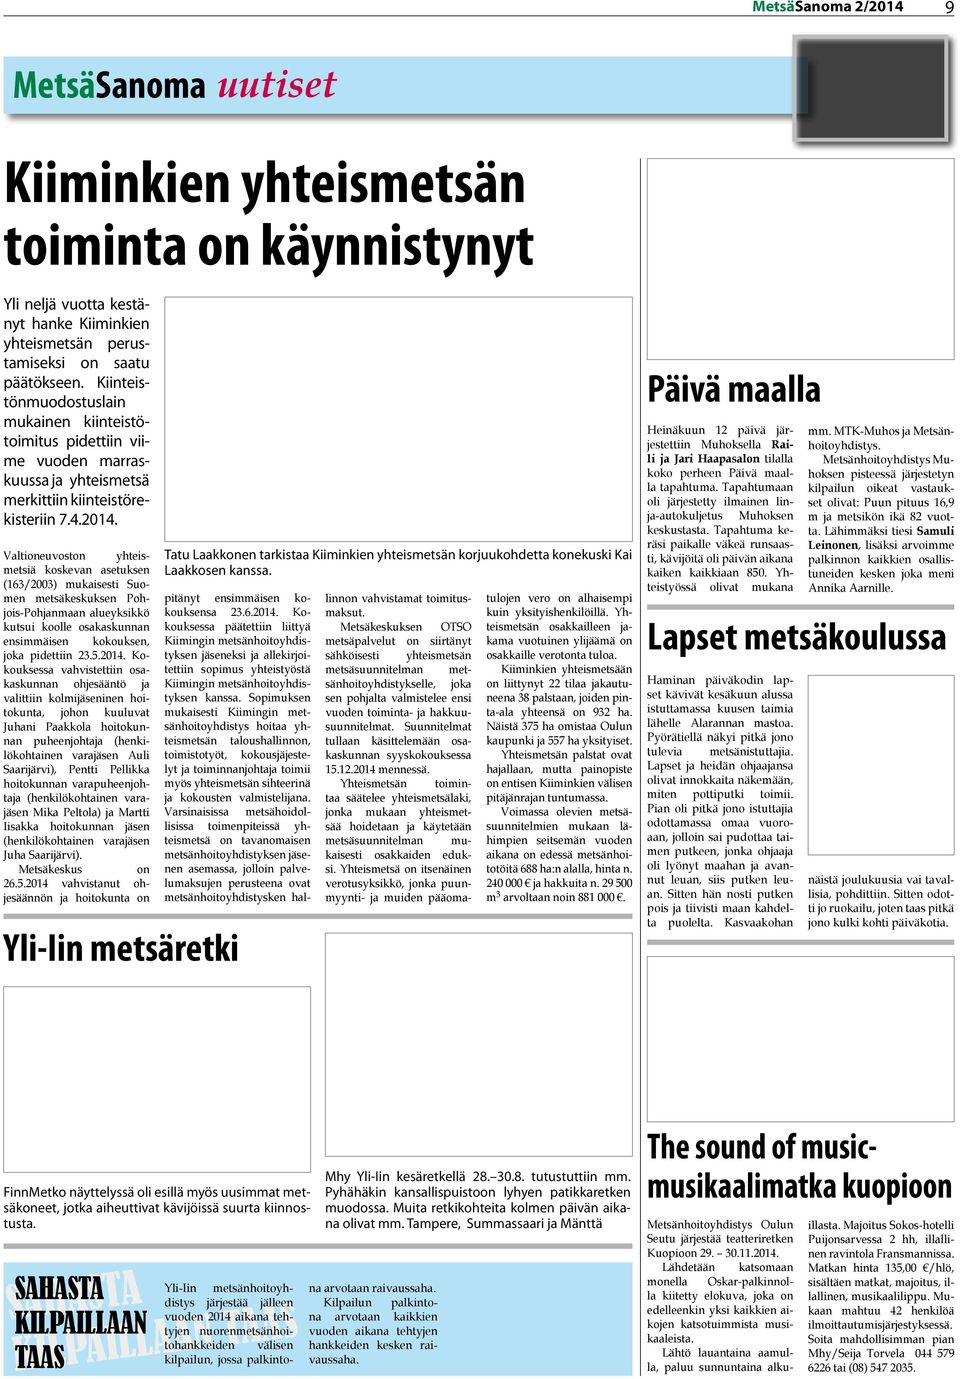 Valtioneuvoston yhteismetsiä koskevan asetuksen (163/2003) mukaisesti Suomen metsäkeskuksen Pohjois-Pohjanmaan alueyksikkö kutsui koolle osakaskunnan ensimmäisen kokouksen, joka pidettiin 23.5.2014.